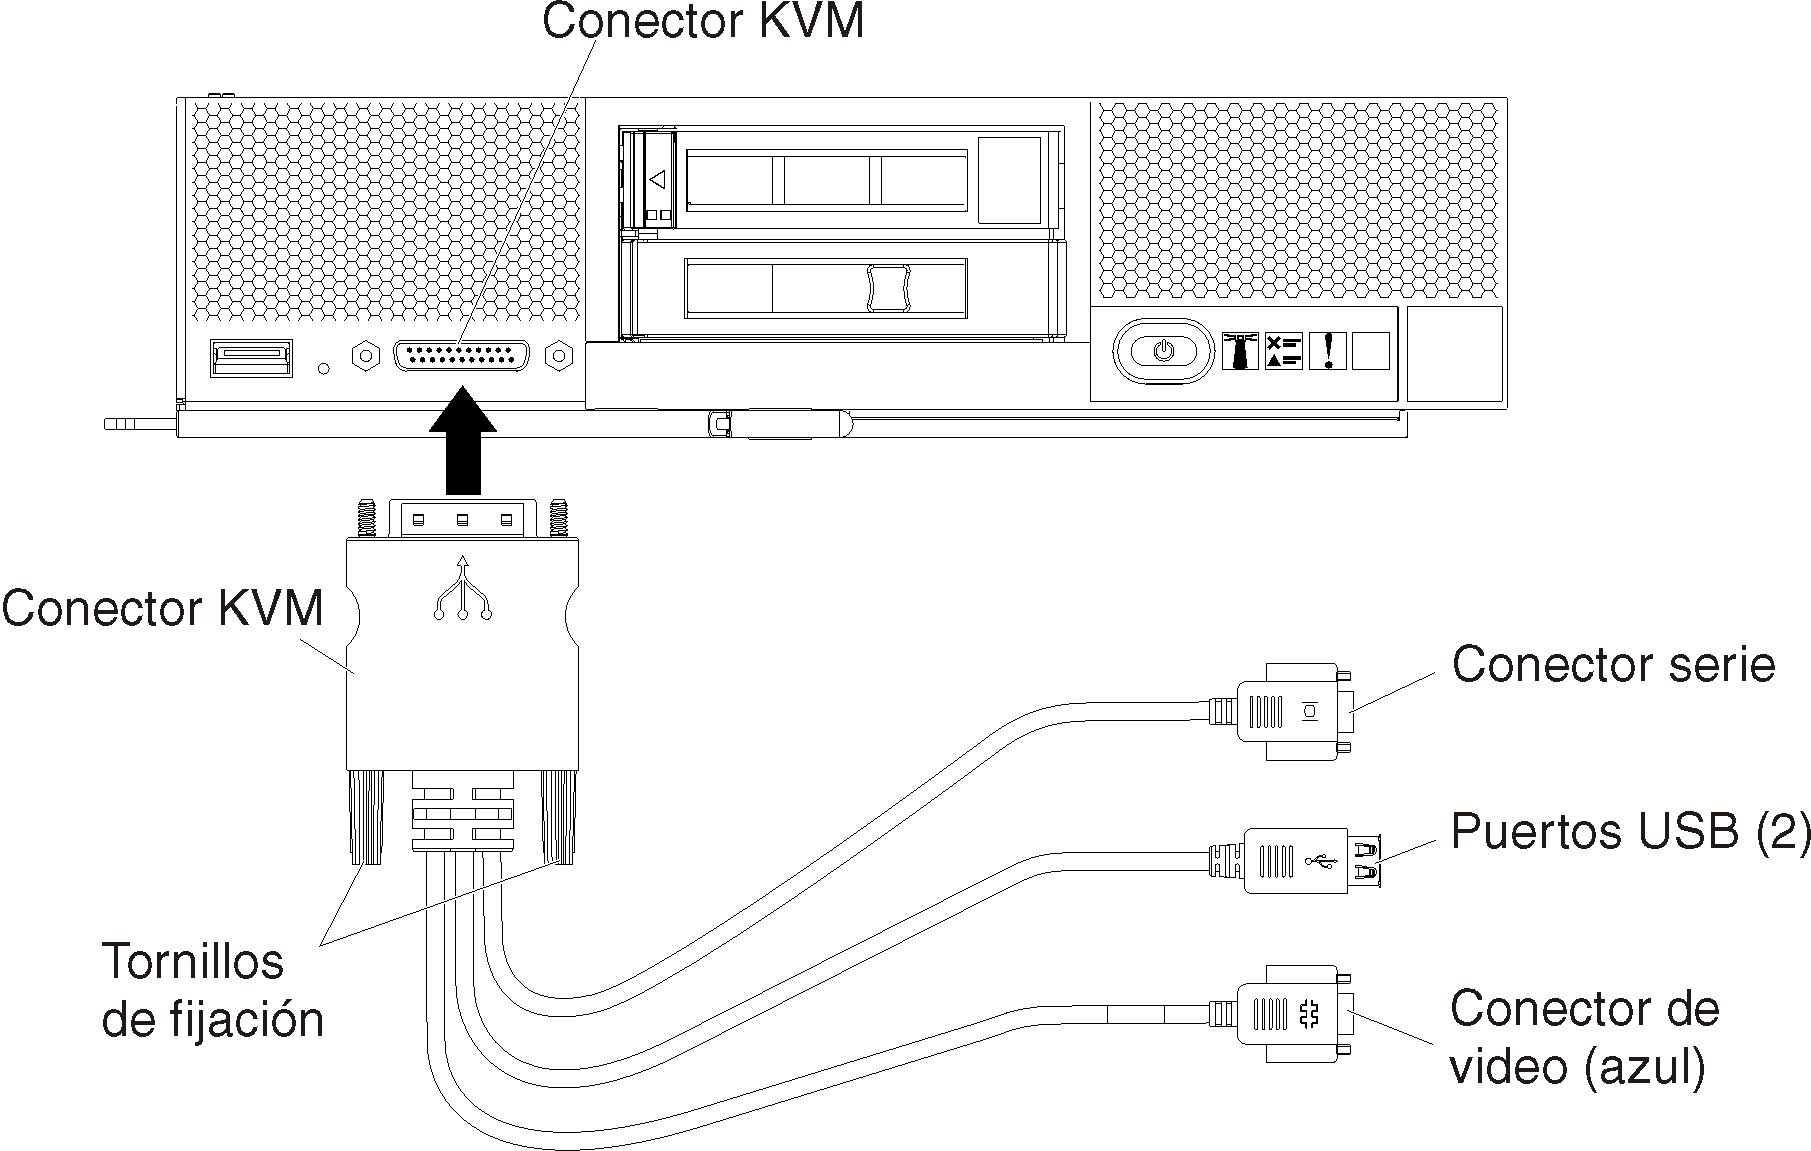 Ilustra el cable multiconector que conecta a un nodo de cálculo